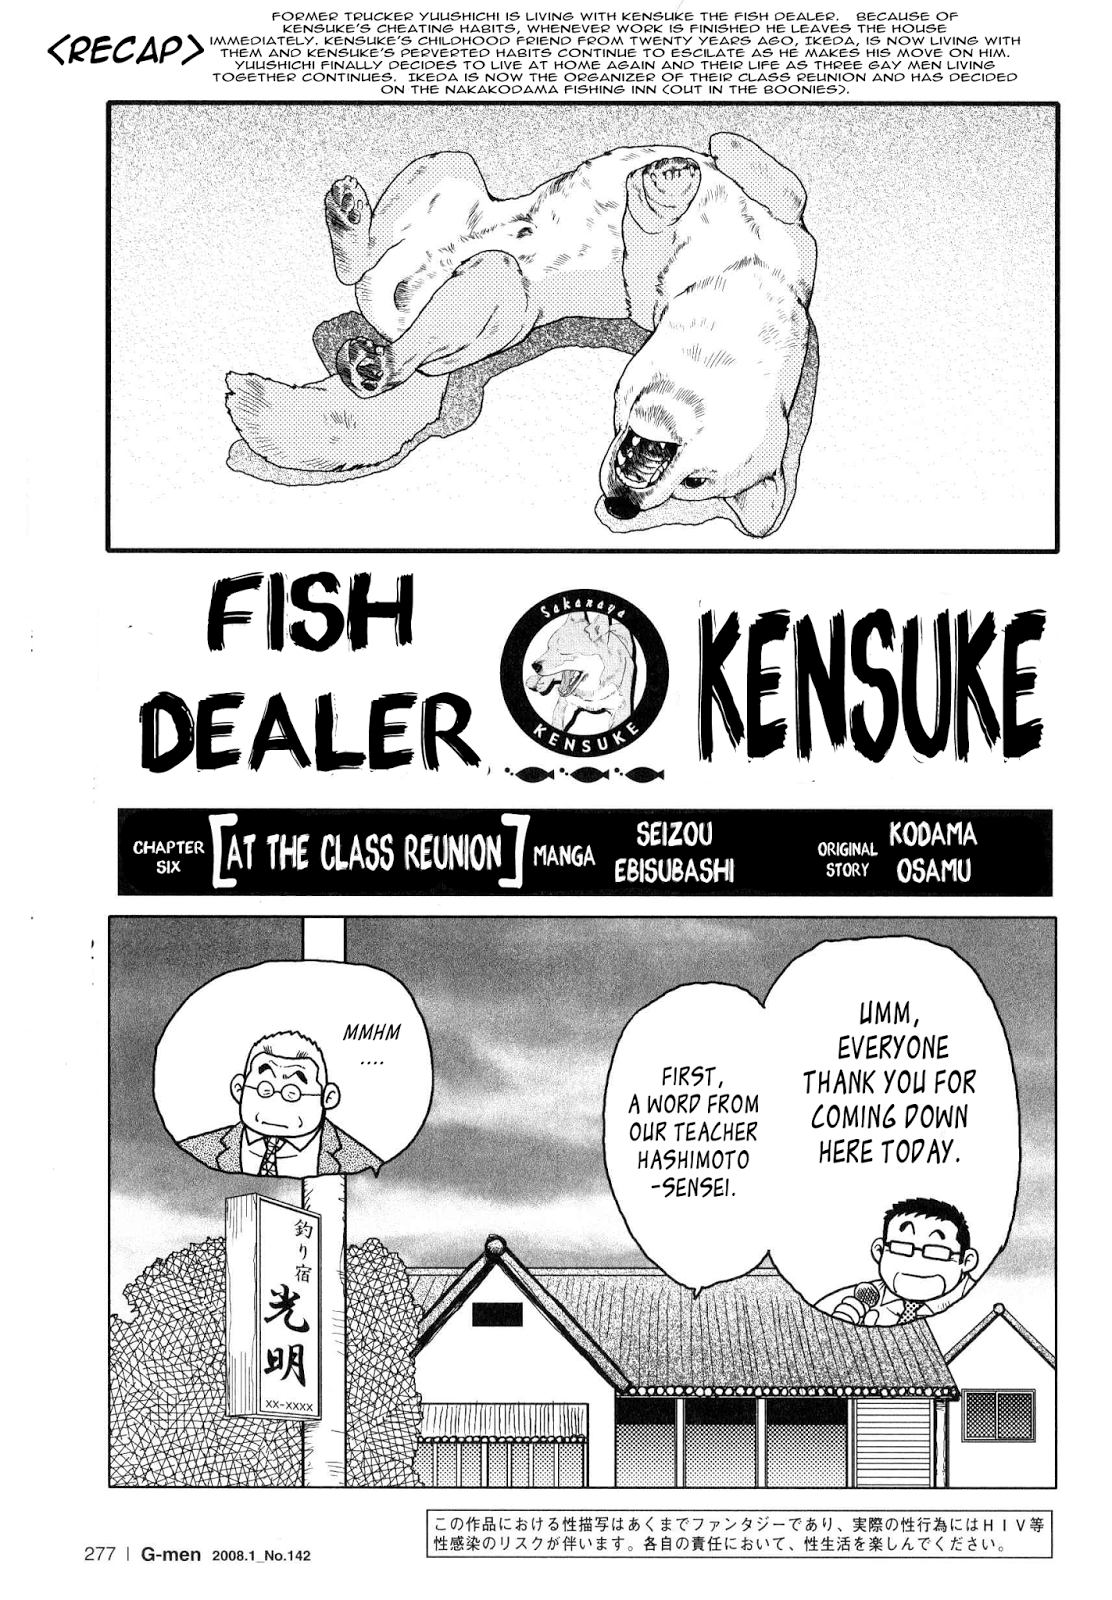 Seizou Ebisubashi Fish Dealer Kensuke 06